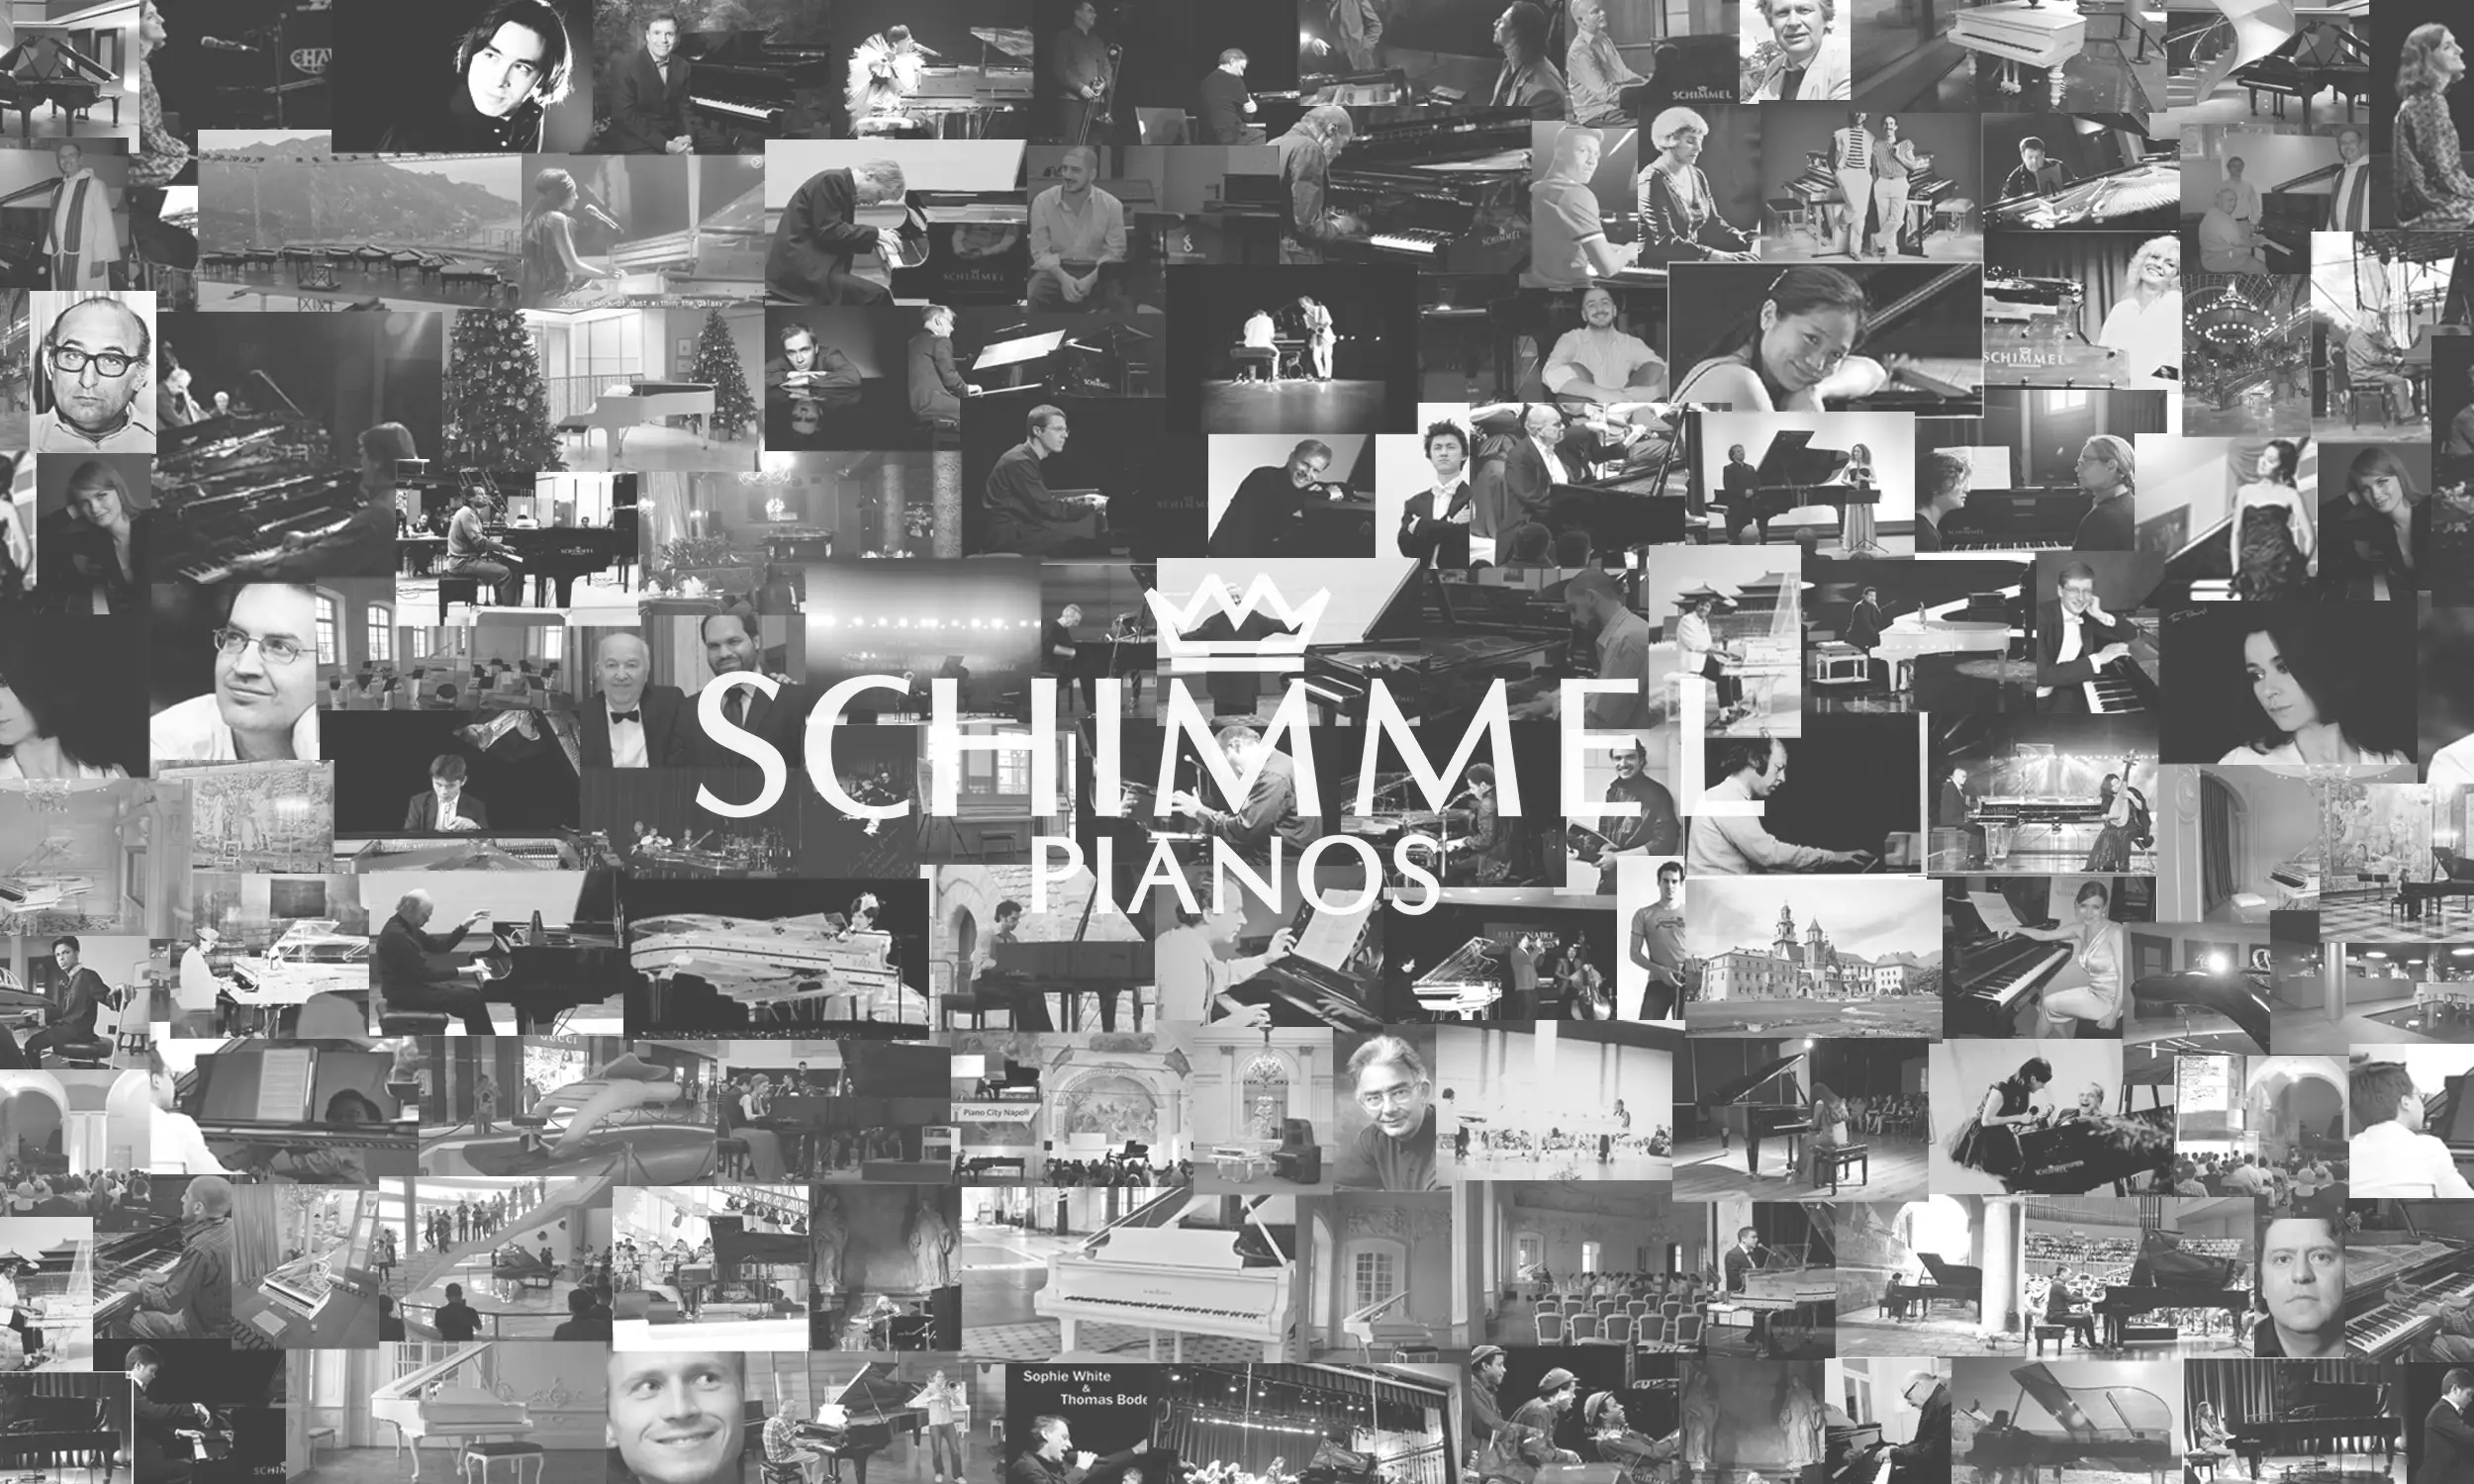 Revue de la marque Schimmel - modèles, prix et numéros de série - Klaviano  Blog